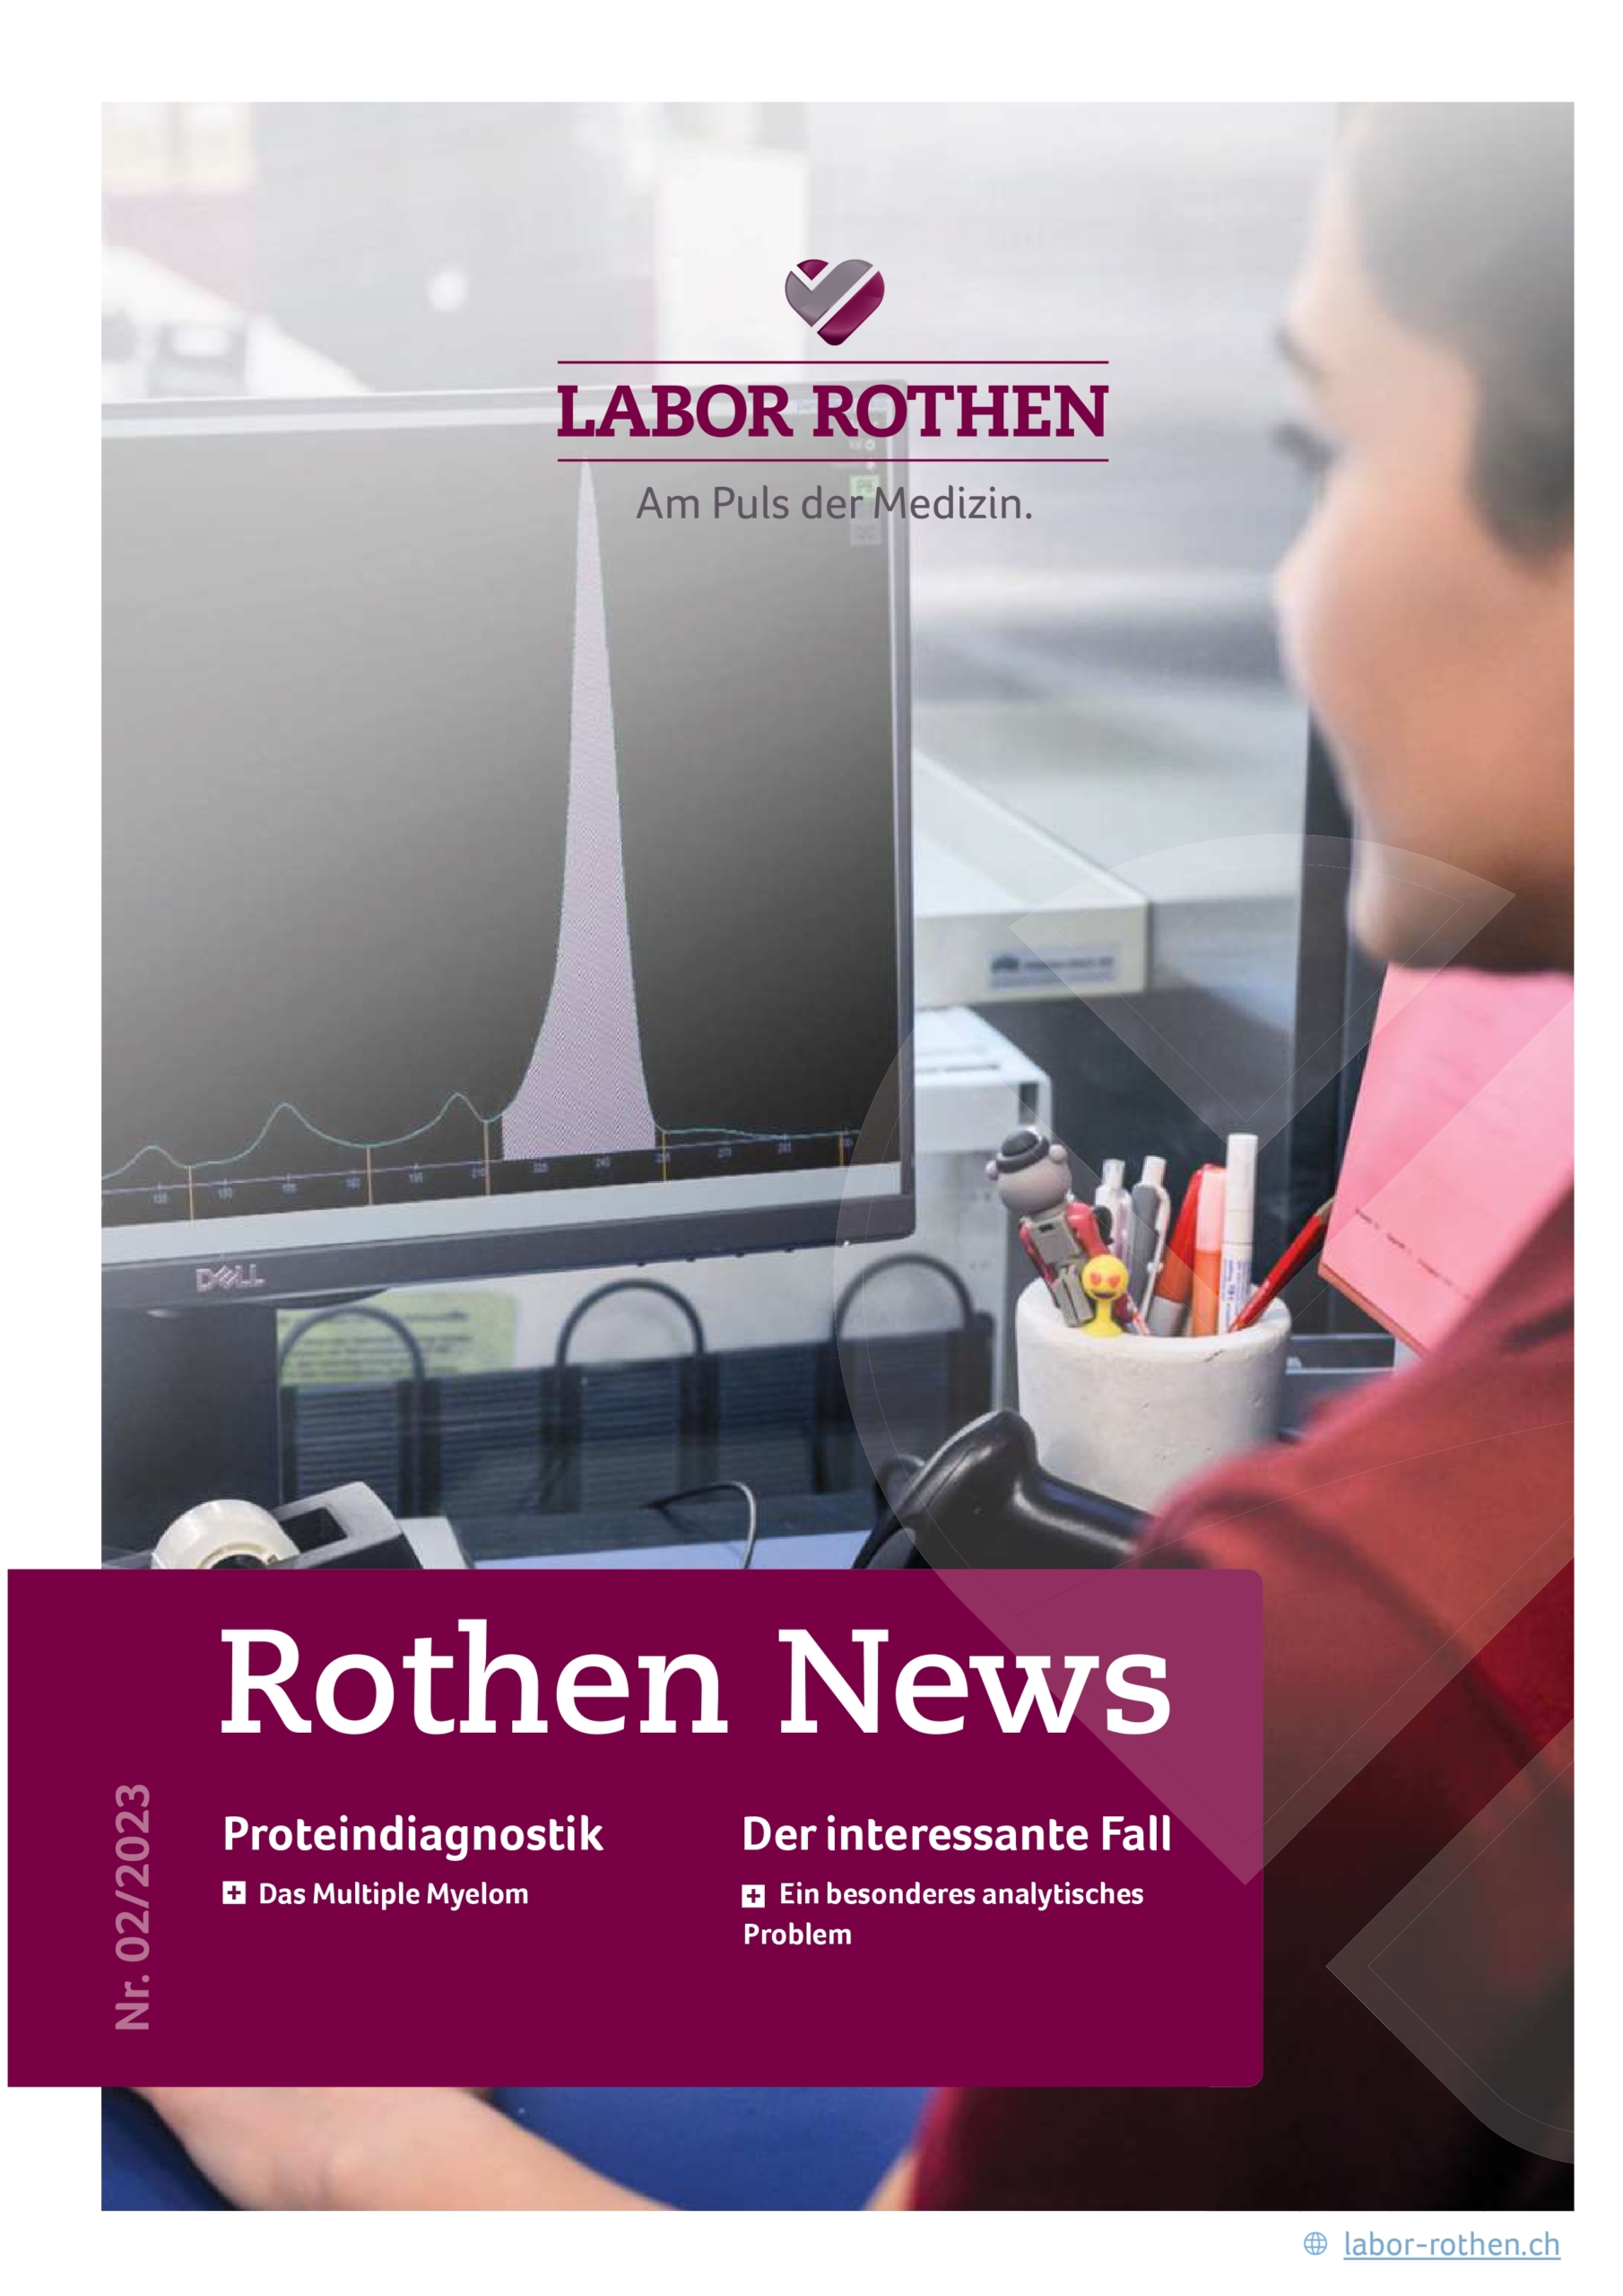 Titelbild der Rothen News Ausgabe Labor Rothen Publikation Neueste Informationen aus dem Labor Rothen Cover der aktuellen Rothen News Labornachrichten und Updates von Labor Rothen Rothen News Zweite Ausgabe